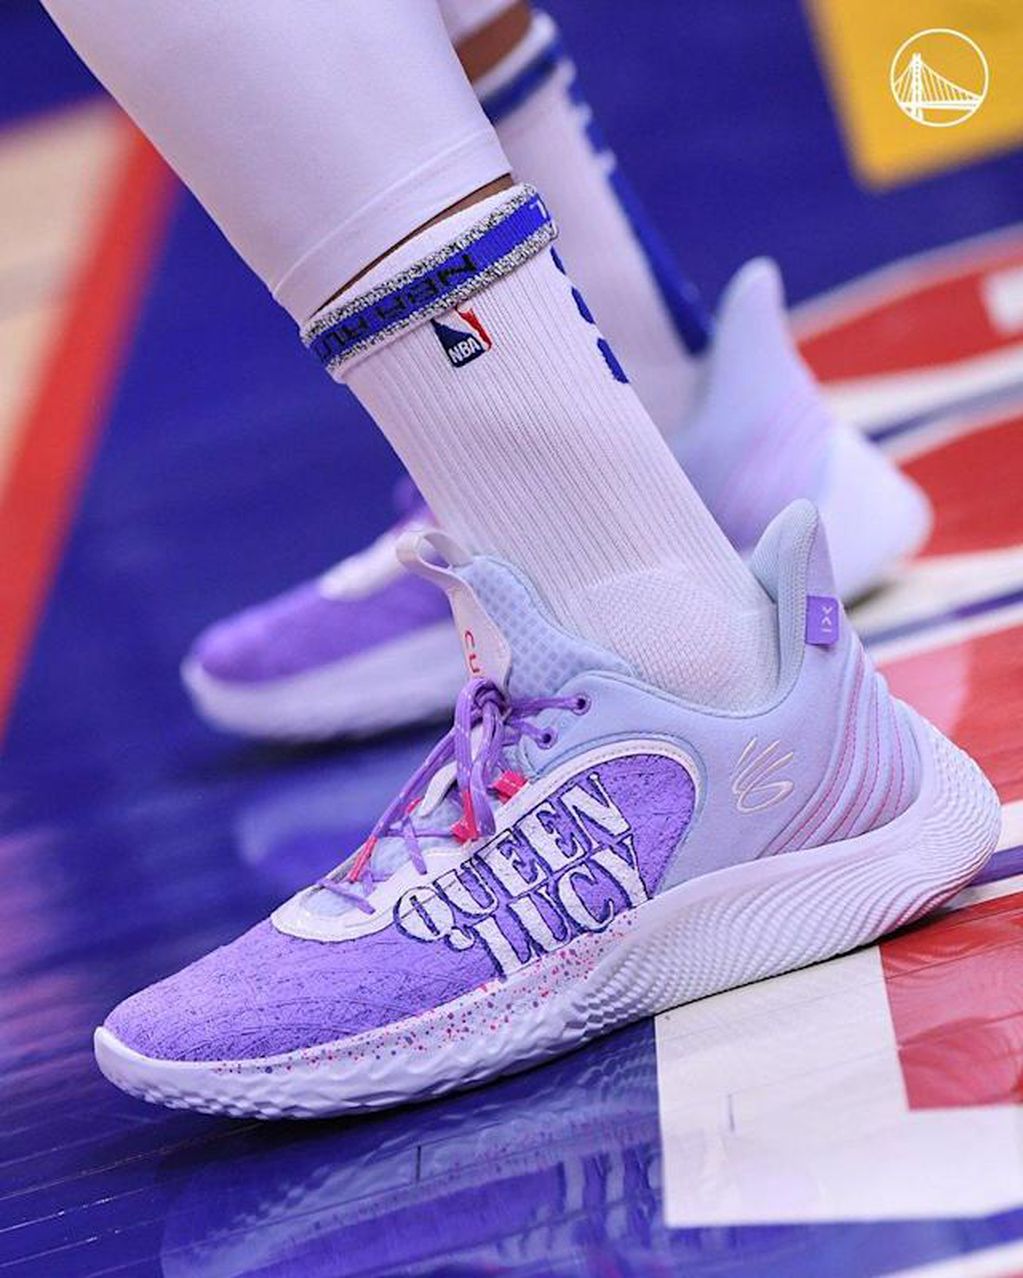 Las zapatillas que usó Curry en sus partidos de NBA.